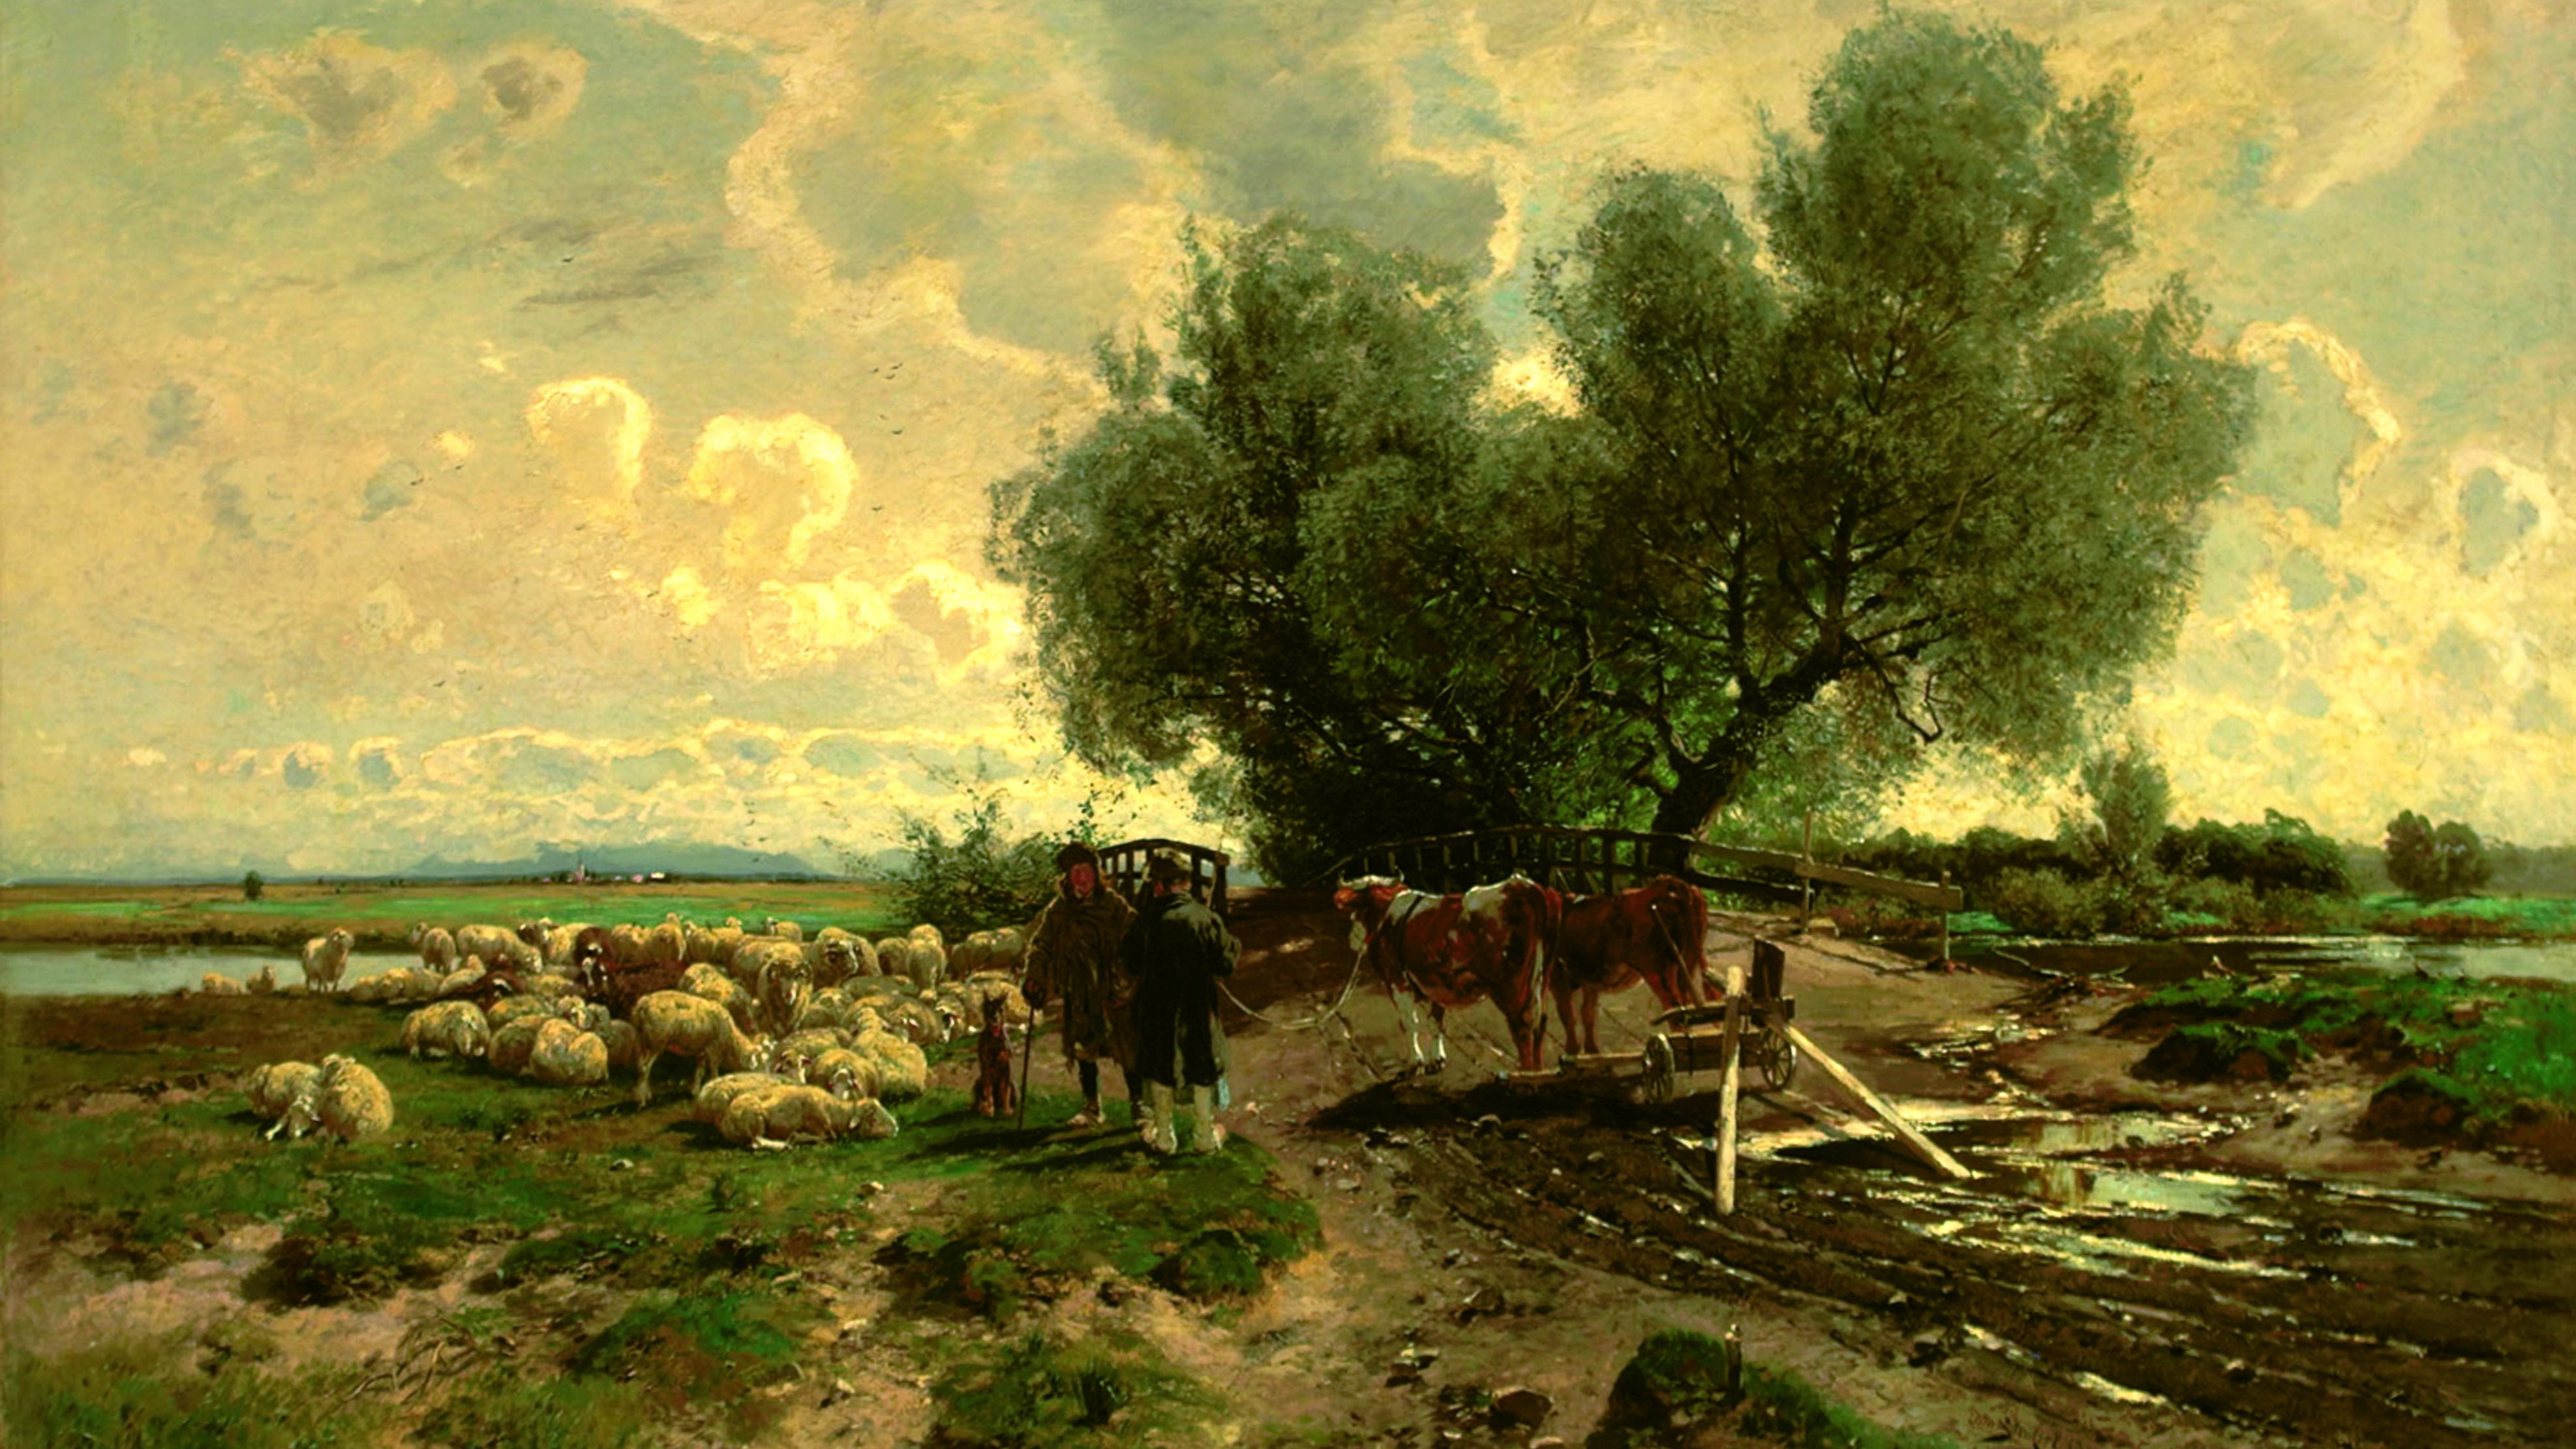 Ölgemälde von Otto Strützel, "Amperbrücke bei Mitterndorf" zeigt Schäfer mit Schafherde und Bauer mit 2 Rindern an Holzbrücke über die Amper